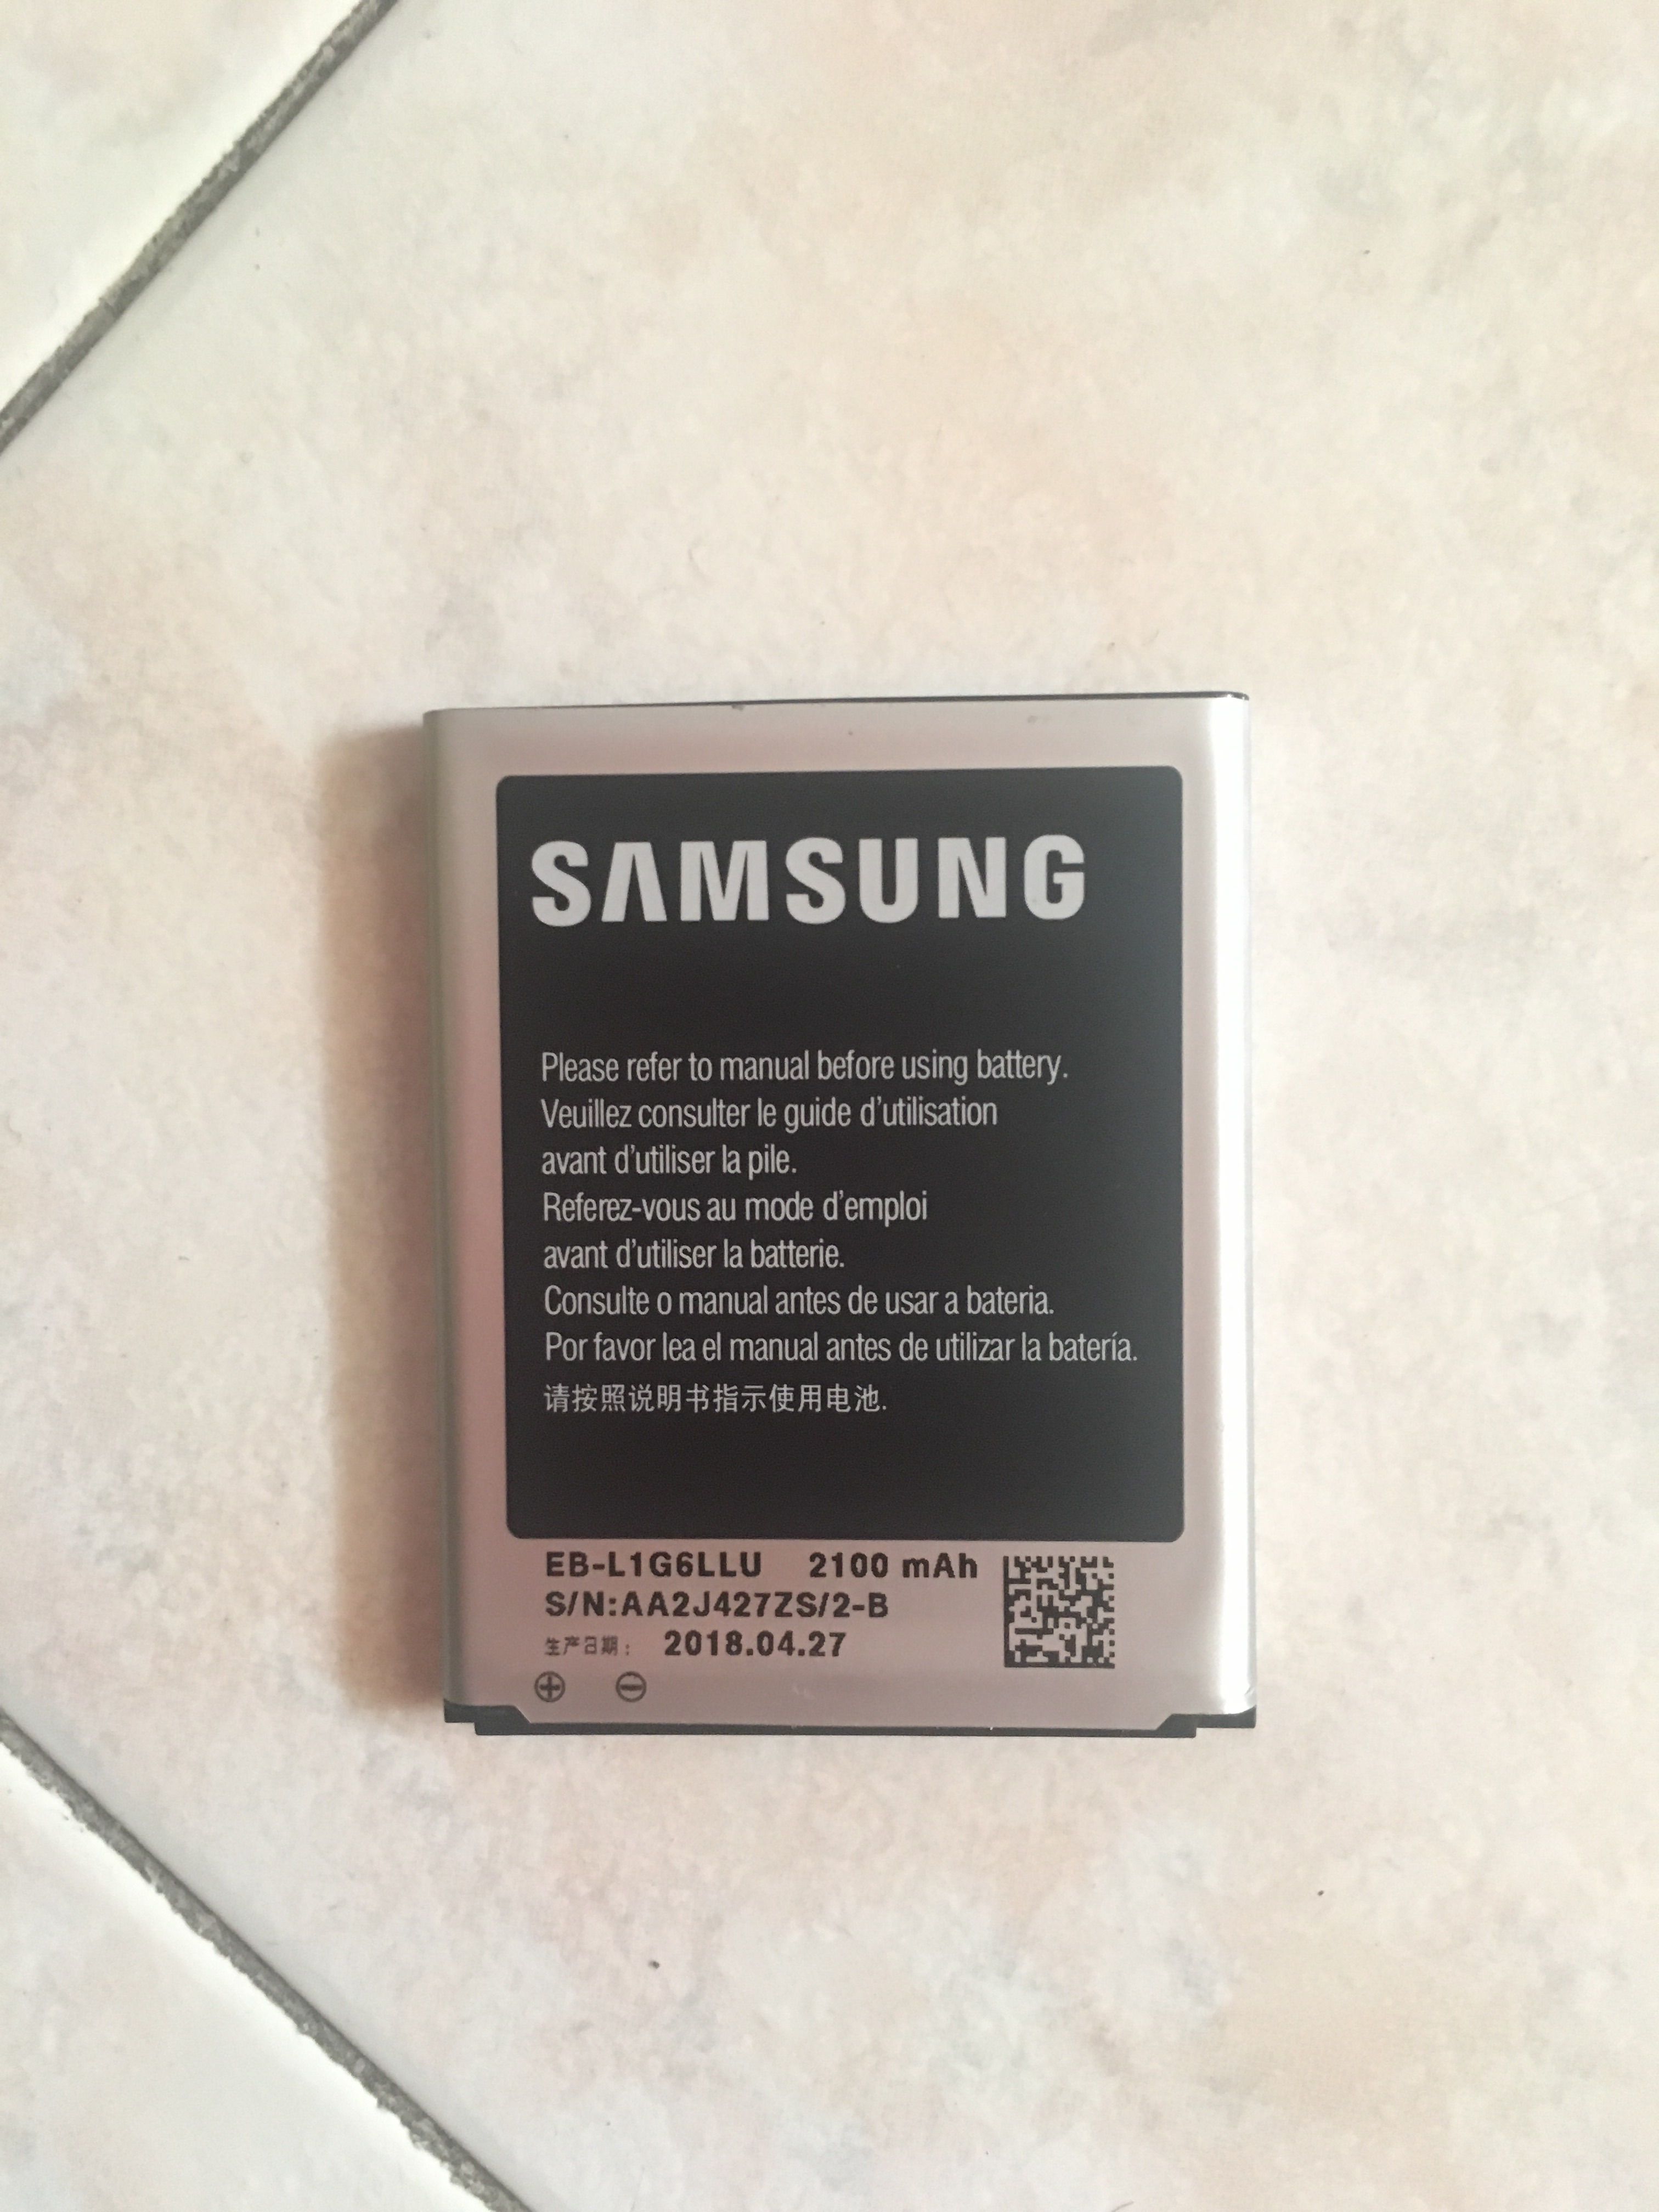 Risolto: Batterie: Come verificare se sono originali? - Samsung Community